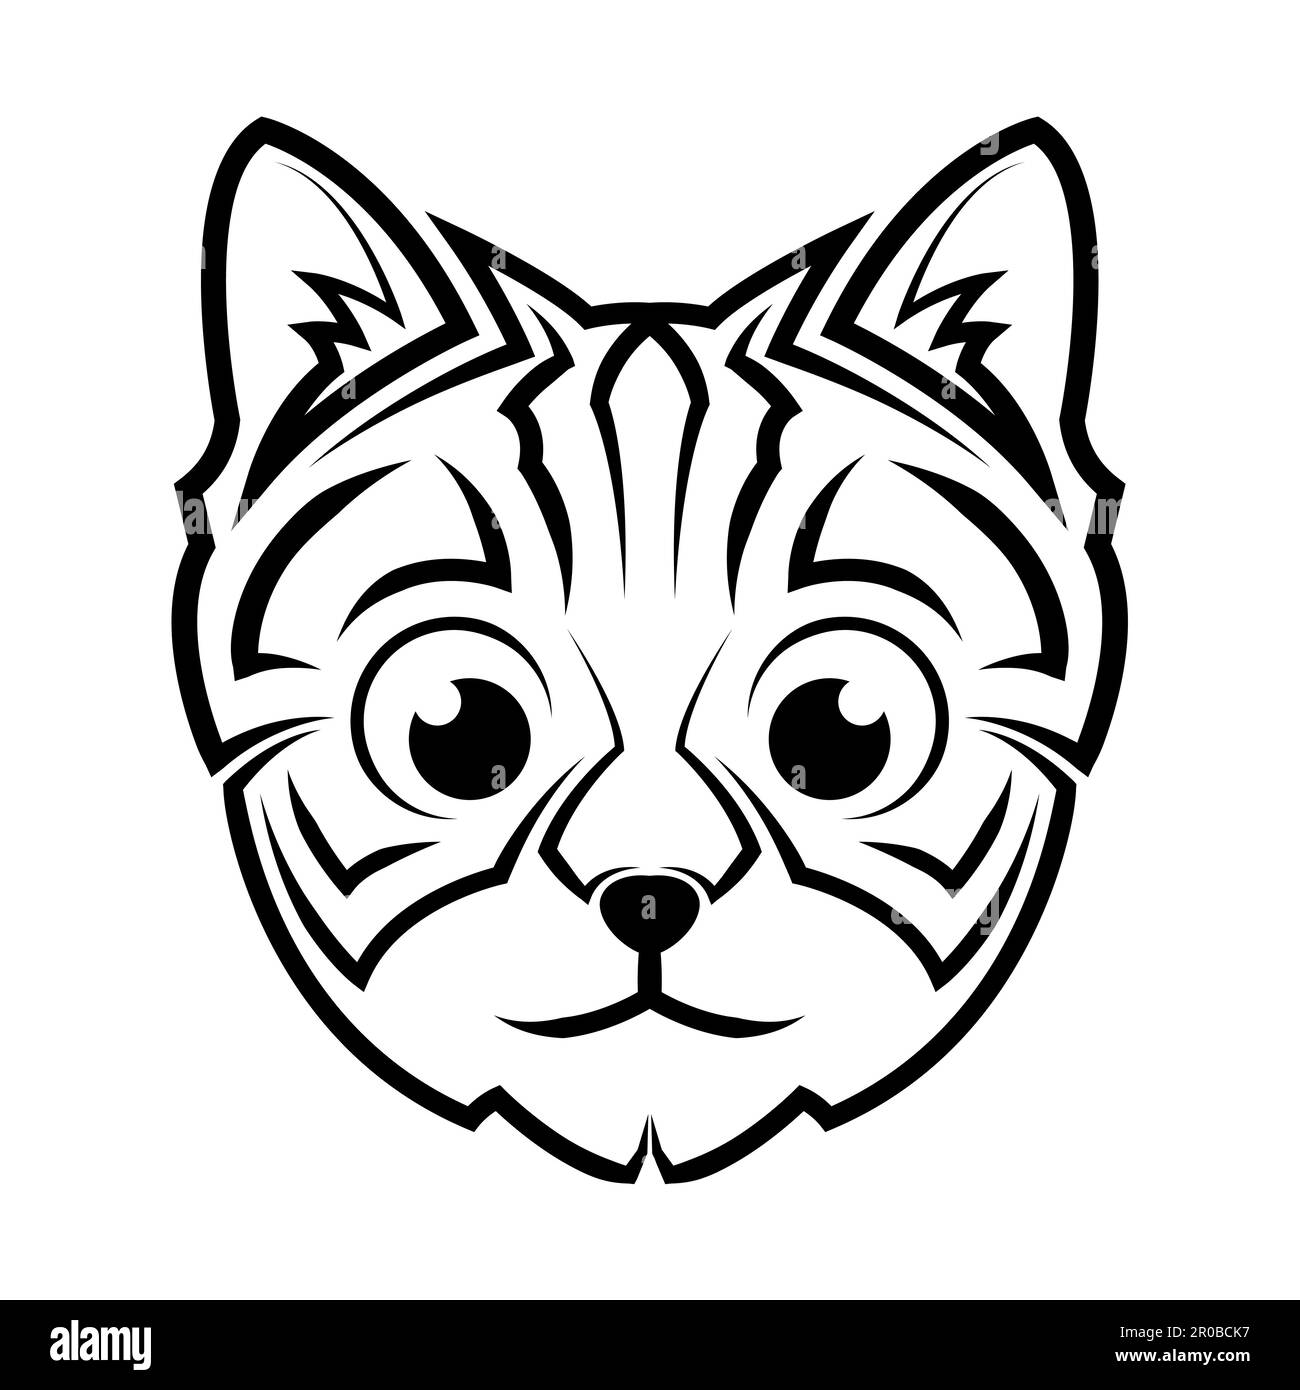 Bild eines süßen Katzenkopfes. Gute Verwendung für Symbol, Maskottchen, Icon, Avatar, Tattoo, T-Shirt-Design, Logo oder beliebiges Design. Stock Vektor